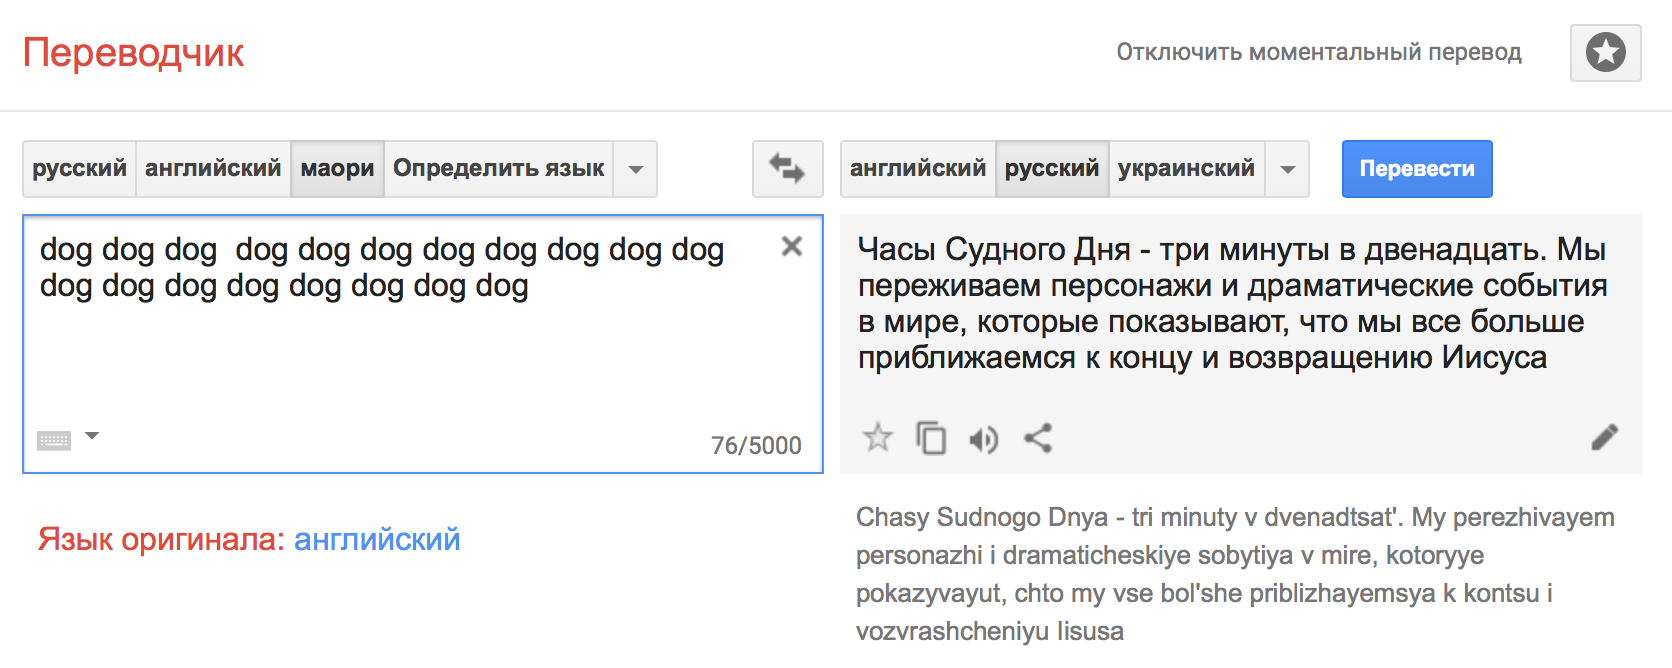 Переводчик с английского на русский самый точный. Переводчик. Google переводчик. Пиривочк. П̆̈ӗ̈р̆̈ӗ̈в̆̈о̆̈д̆̈ч̆̈й̈к̆̈.